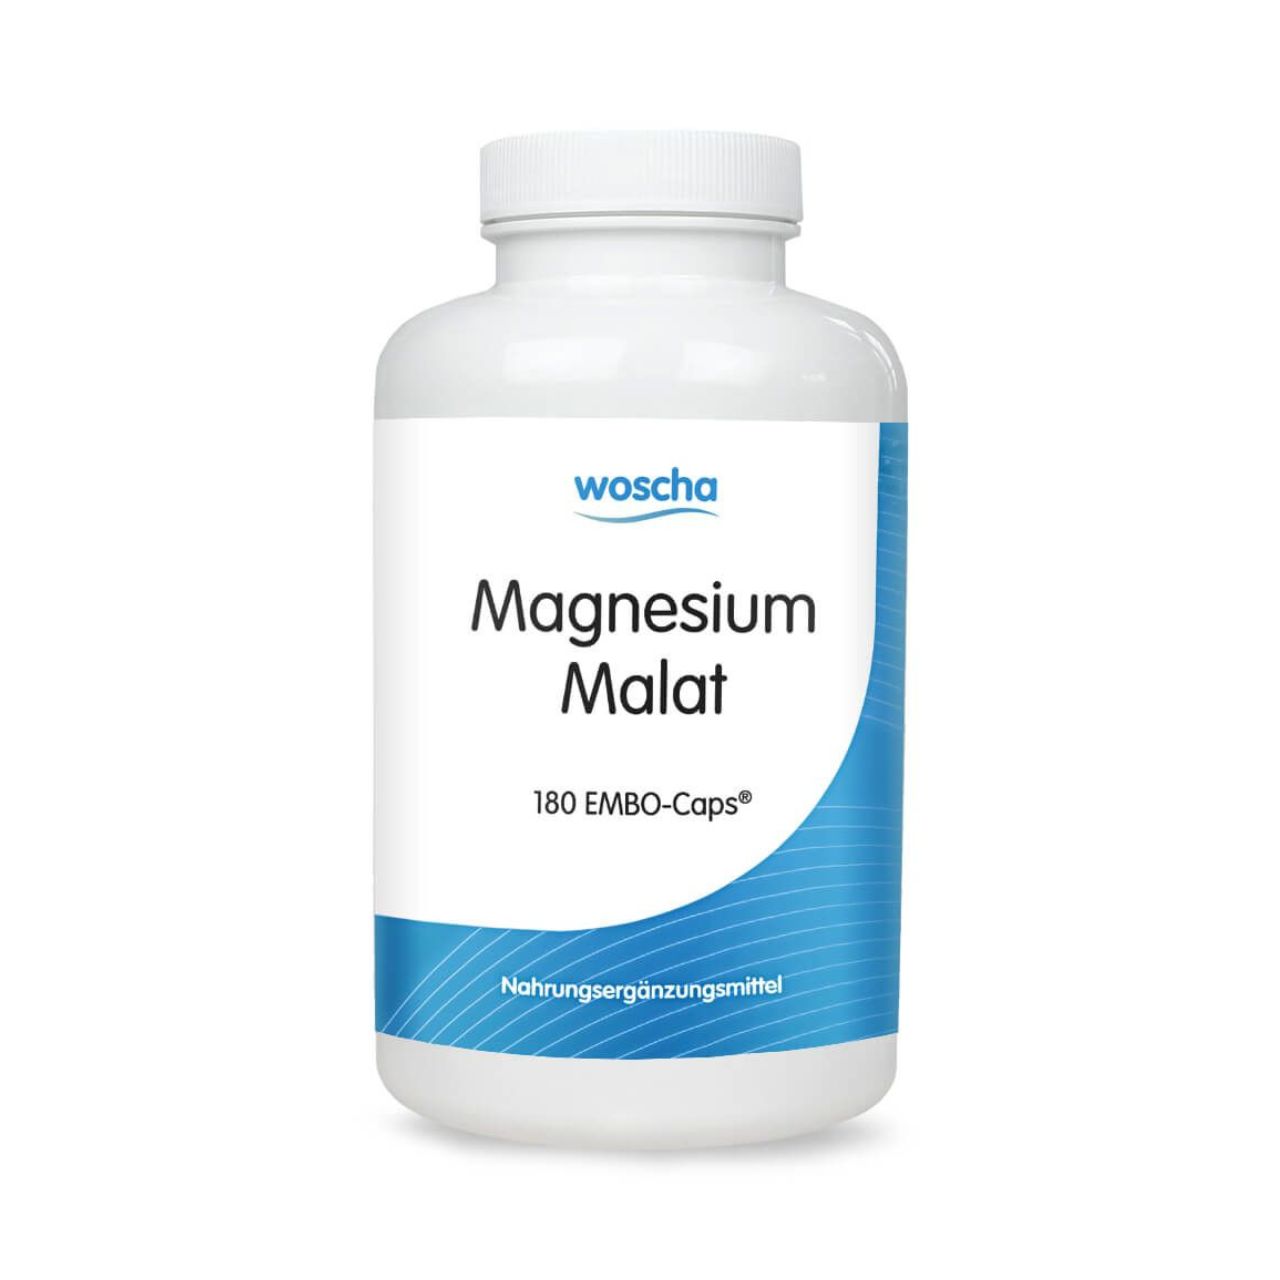 Woscha Magnesium Malat von podo medi beinhaltet 180 Kapseln